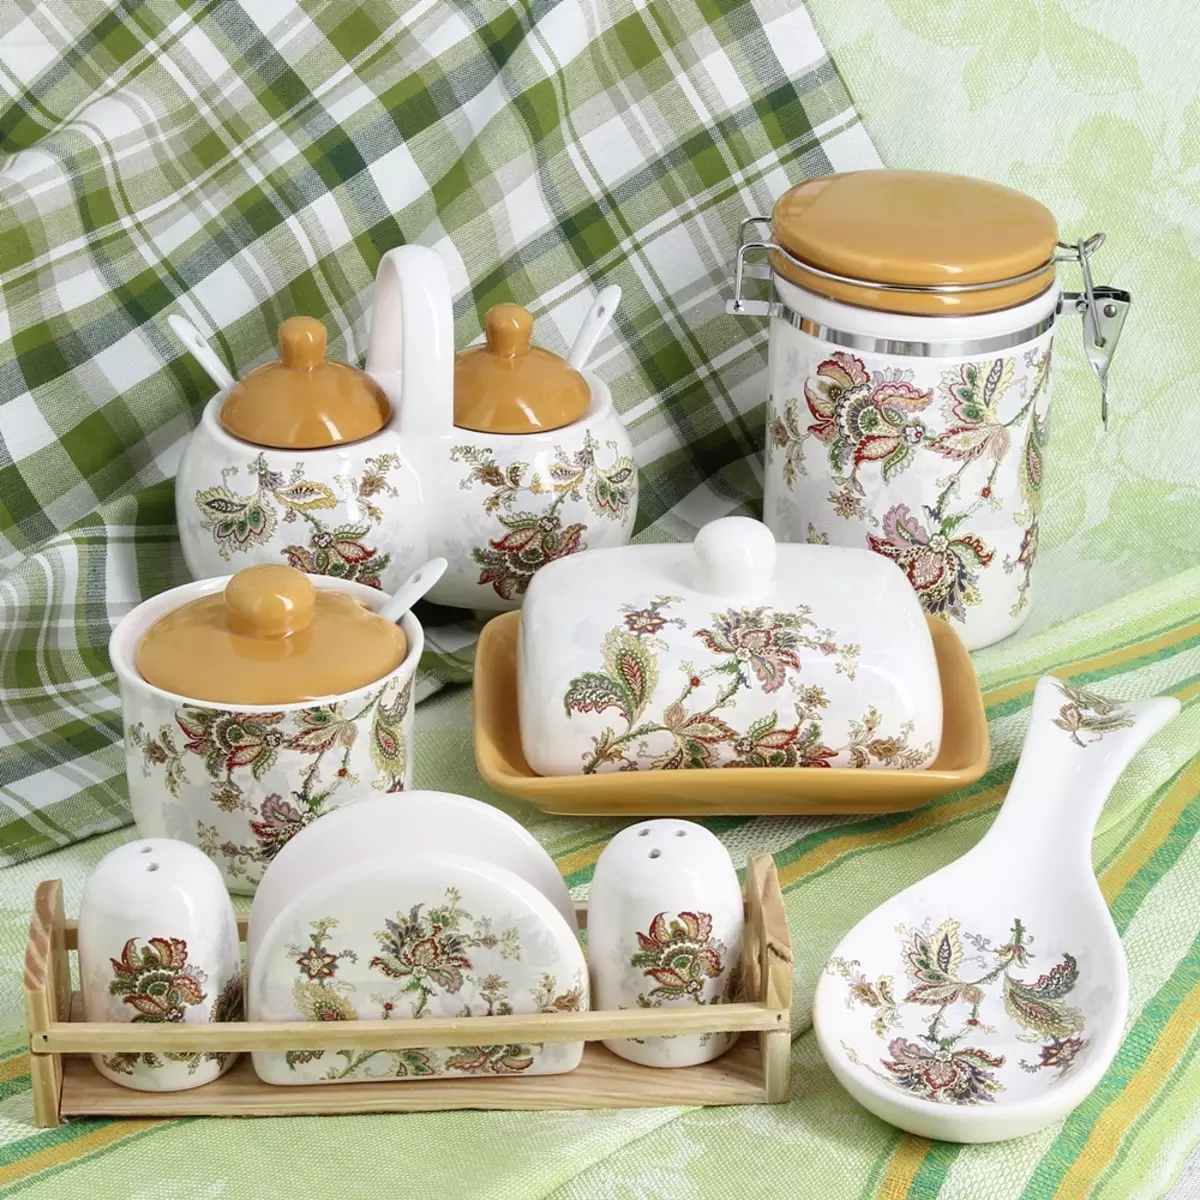 ເຄື່ອງໃຊ້ Dolomite: ເປັນອັນຕະລາຍຫຼືບໍ່? ເອກະສານນີ້ແມ່ນຫຍັງ? ຄວາມປອດໄພ, mugs ແລະ vases, pots, kettles ແລະອາຫານປະເພດອື່ນໆ. ເຮັດແນວໃດເພື່ອປະກອບມັນ? 10643_3